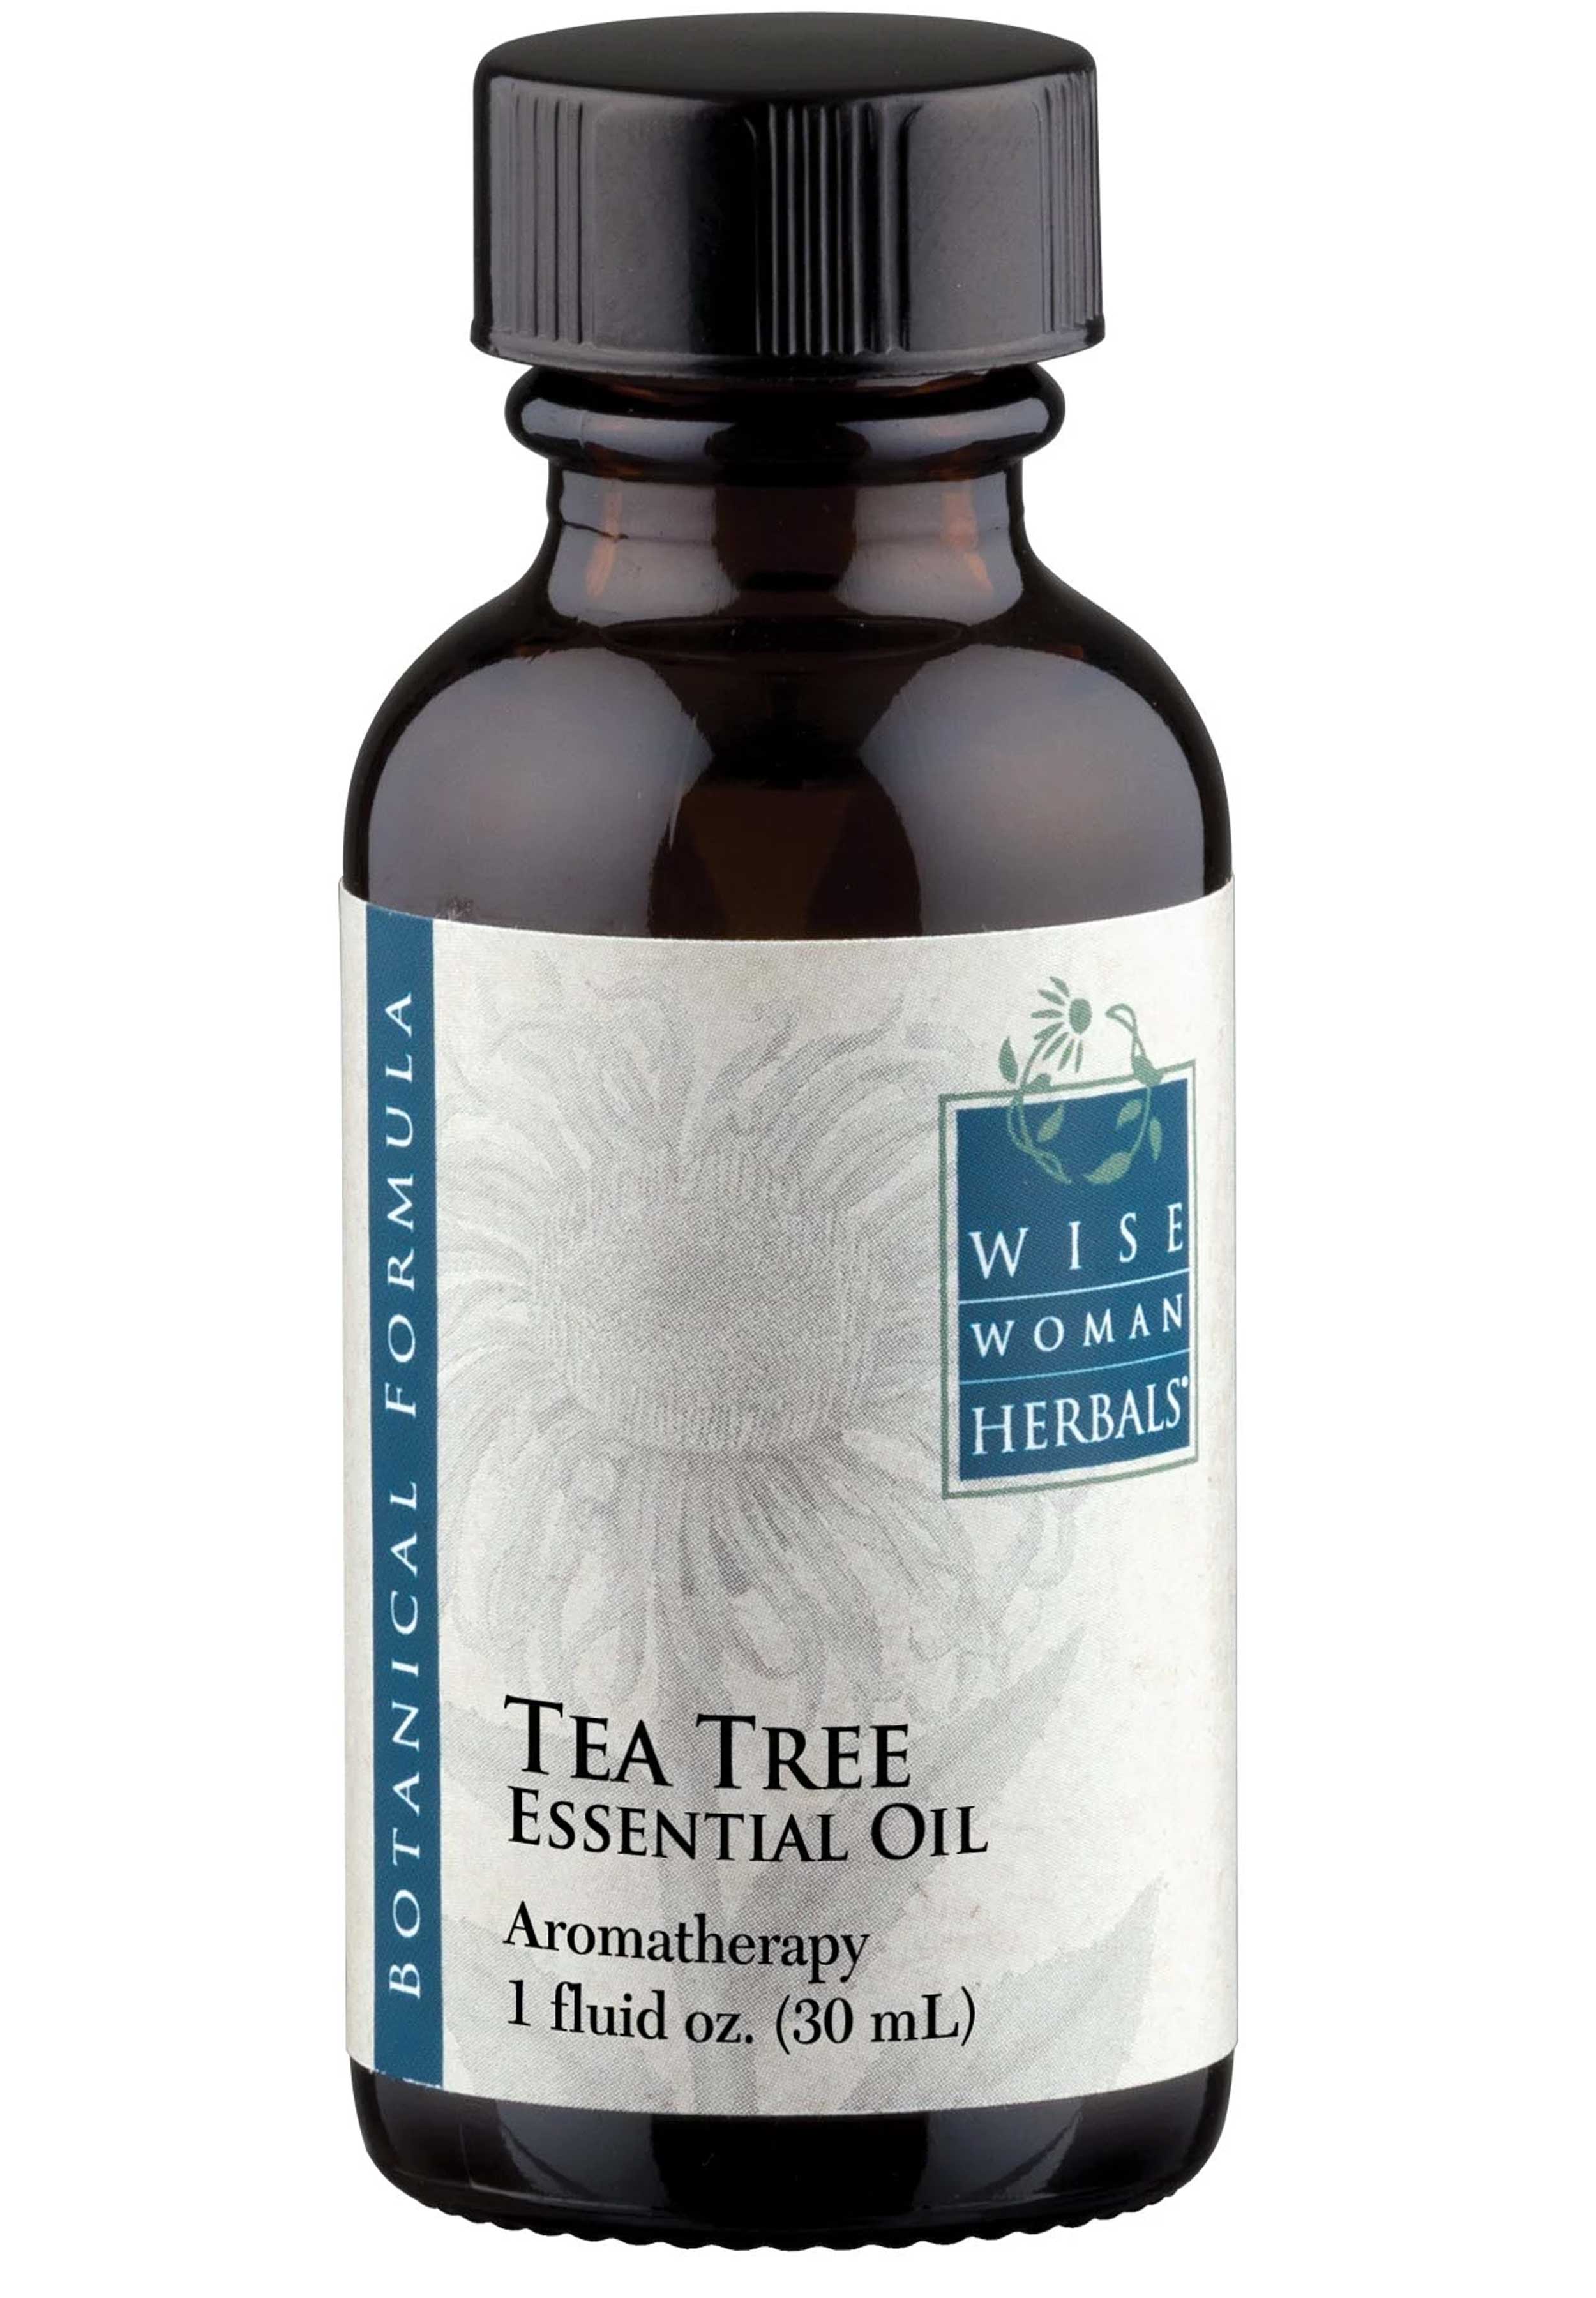 Wise Woman Herbals Tea Tree Essential Oil